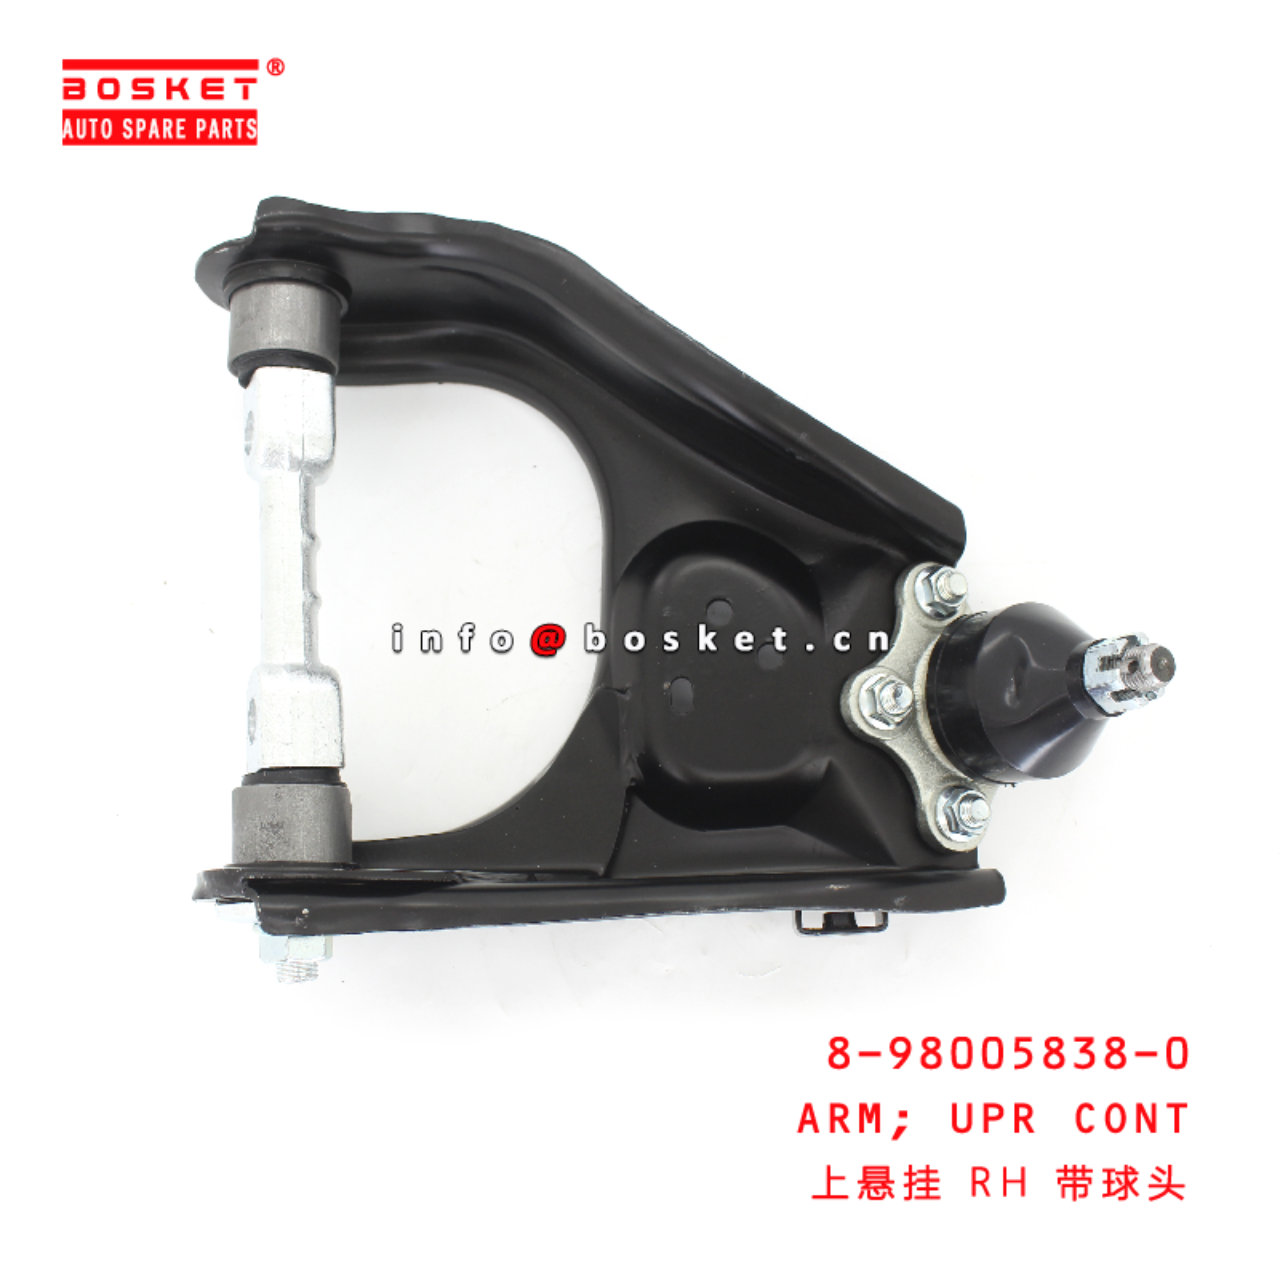 8-98005838-0 Upper Control Arm suitable for ISUZU D-MAX 4*4 4JA1 8980058380